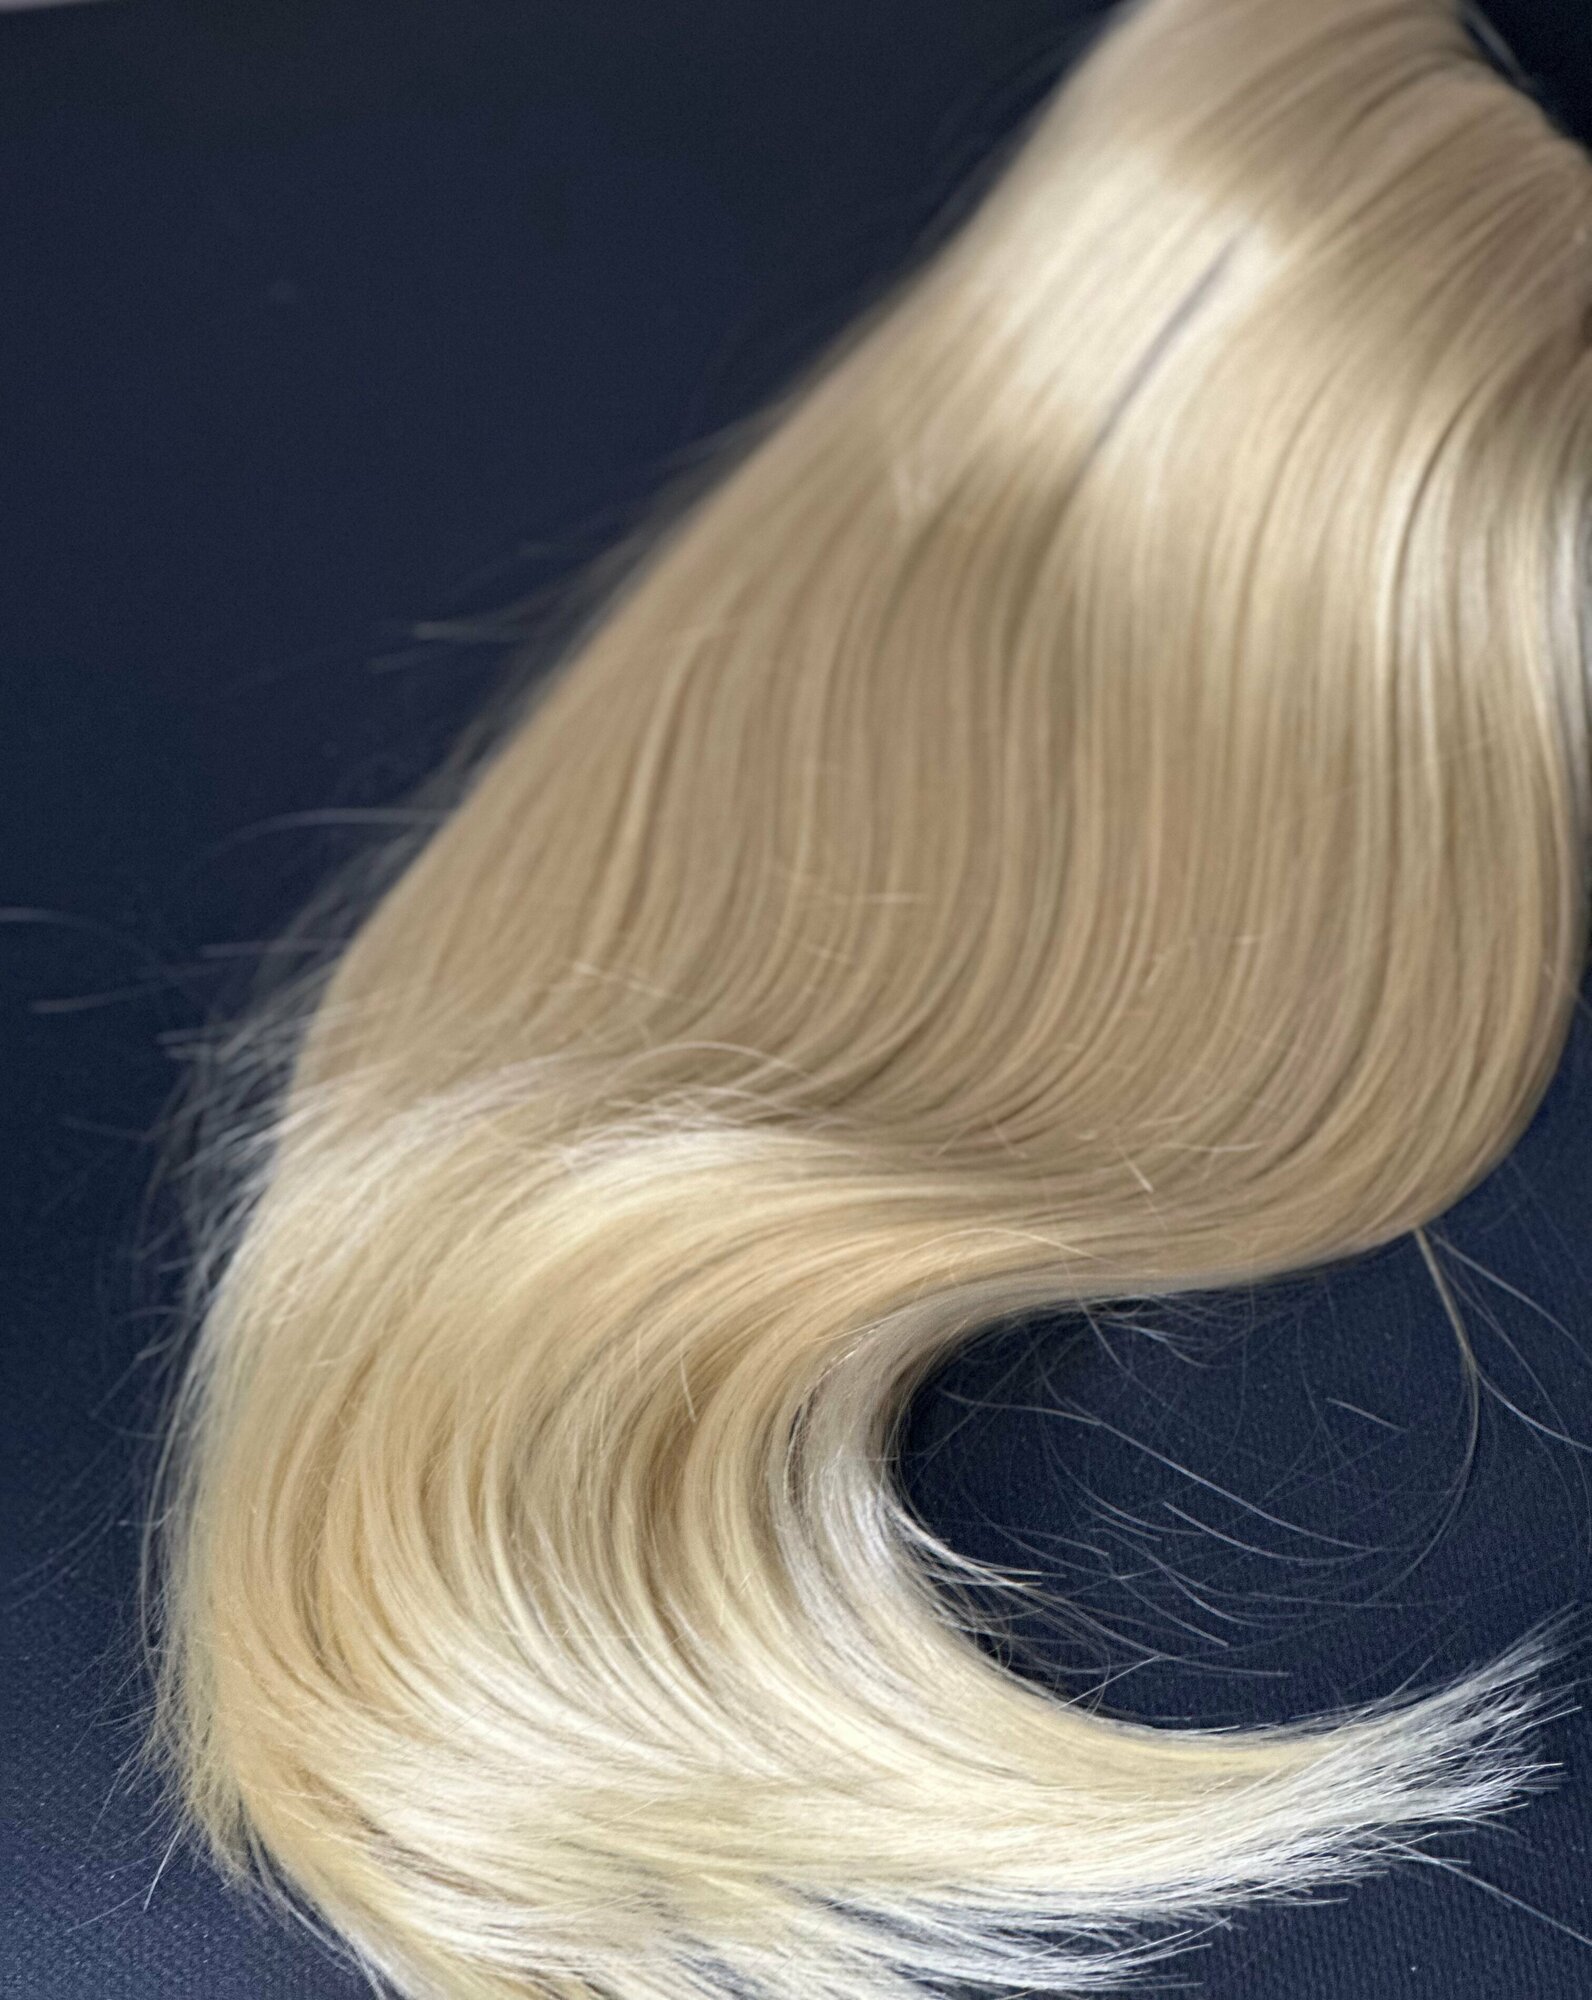 Шиньон хвост накладной прямой волос длиной 45 см на крабе. 190 гр. Цвет – блонд.